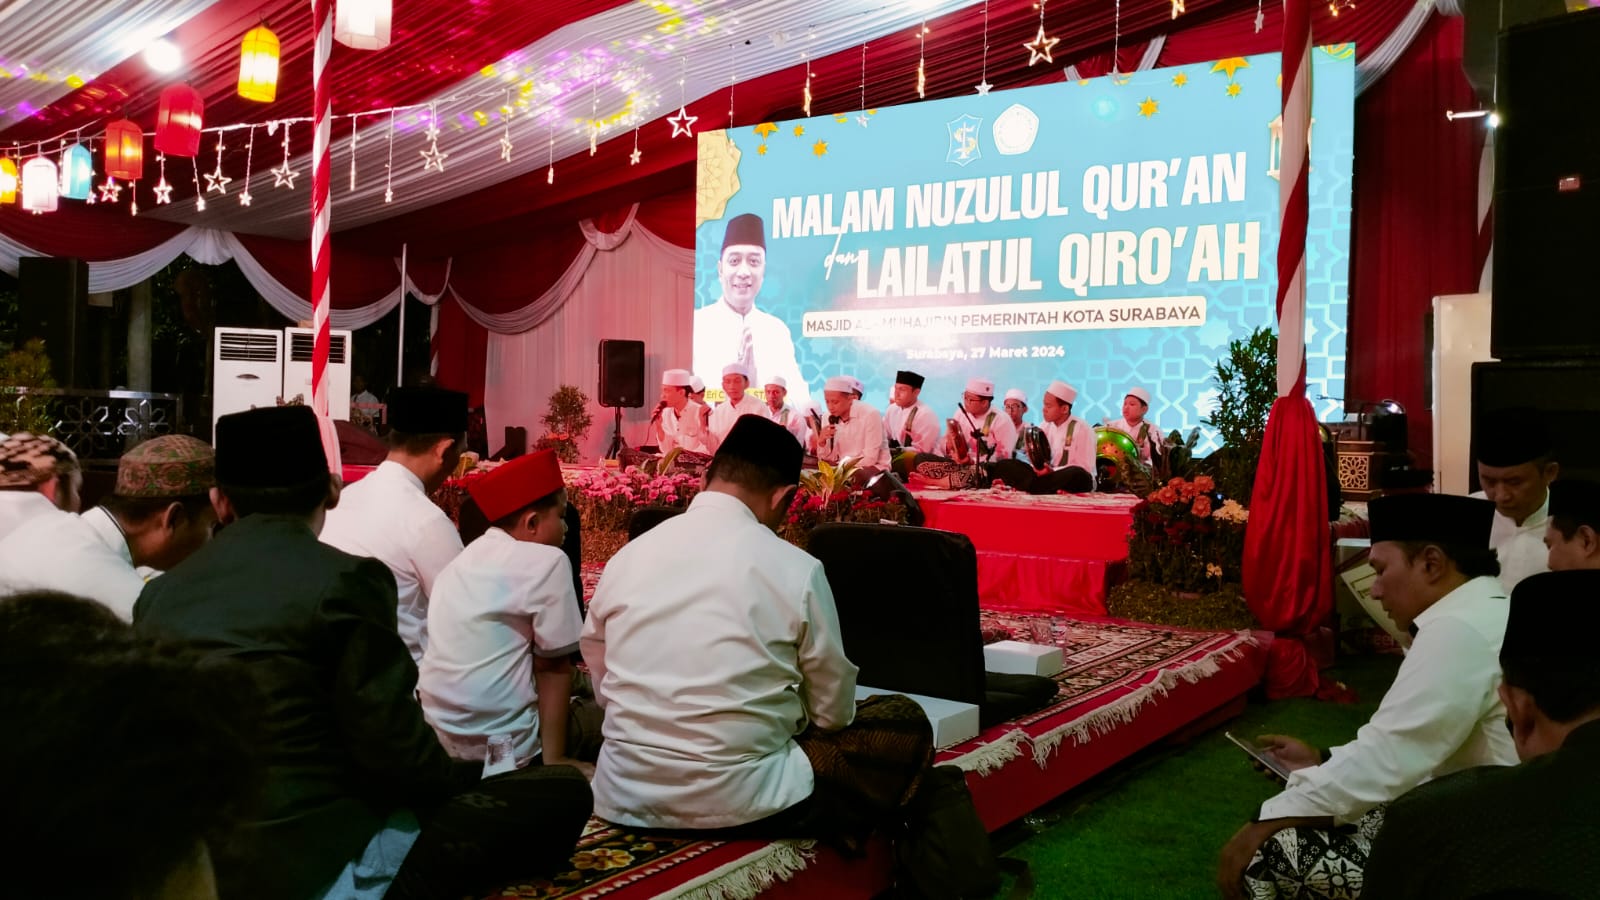 Perayaan Nuzulul Quran dan Lailatul Qiro'ah di Masjid Muhajirin Surabaya: Mempererat Keharmonisan Umat Muslim